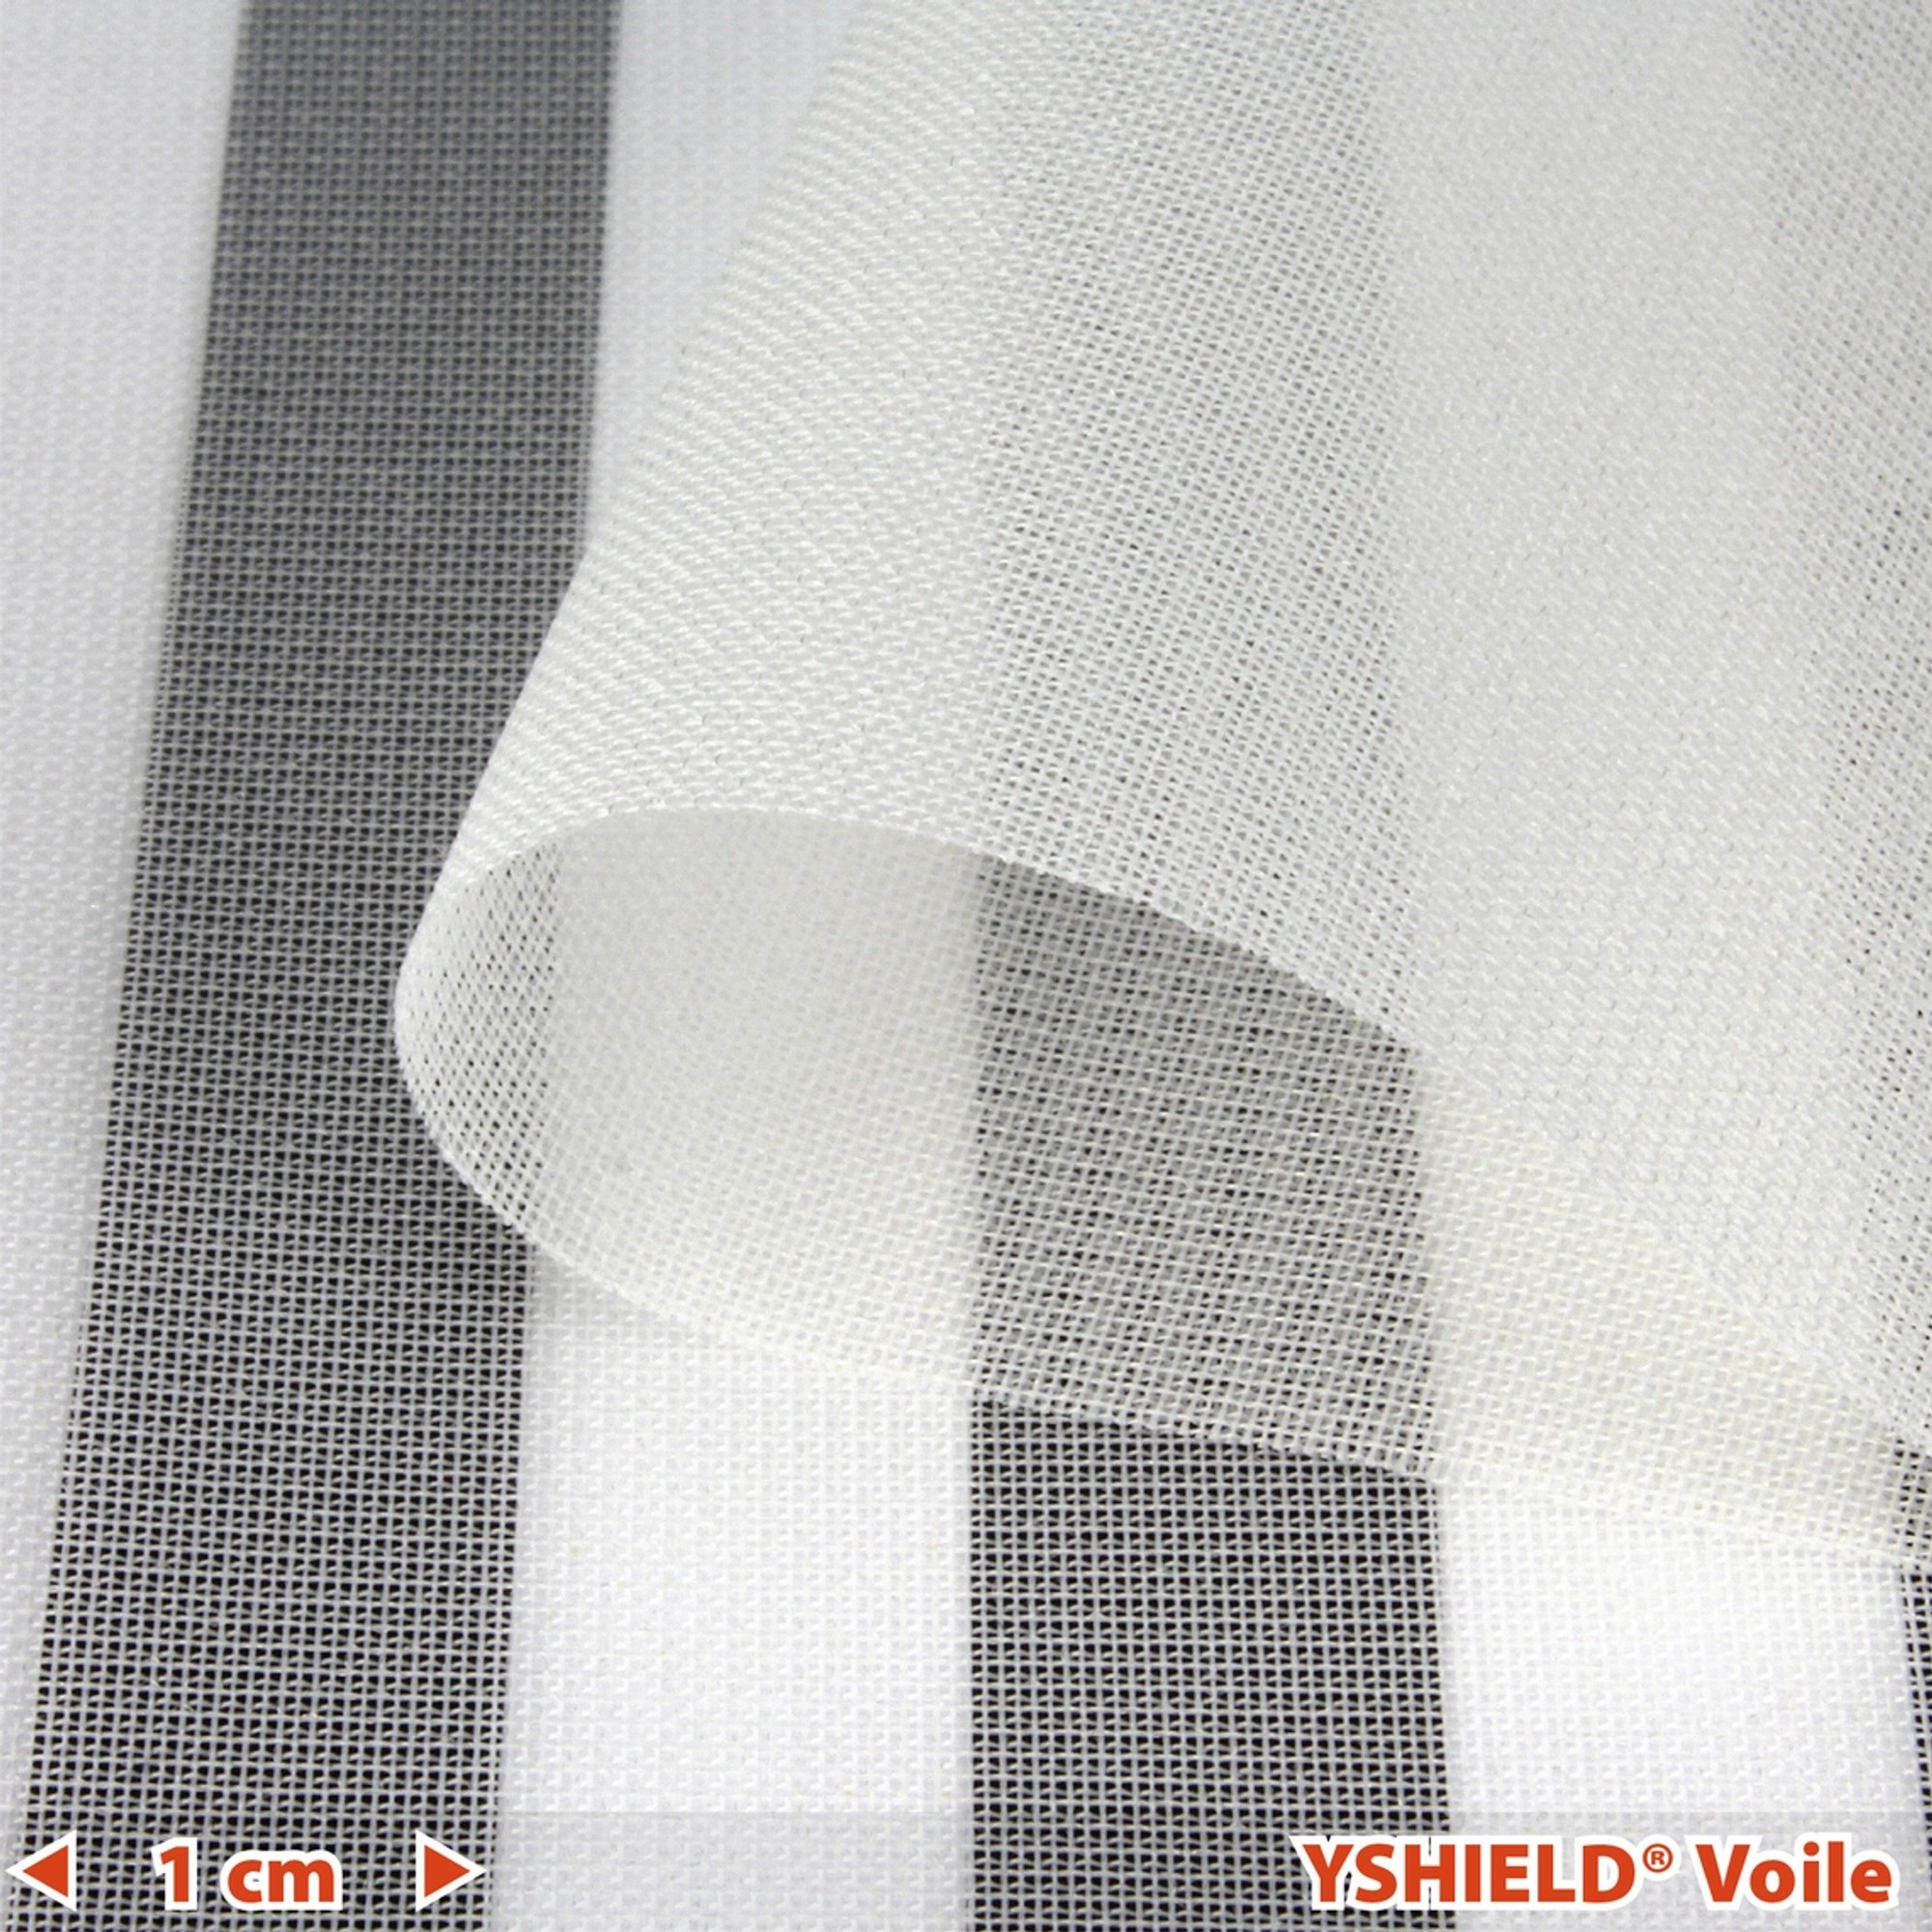 Swiss-Shield® MAX-WEAR™, Shielding fabric, Width 150 cm